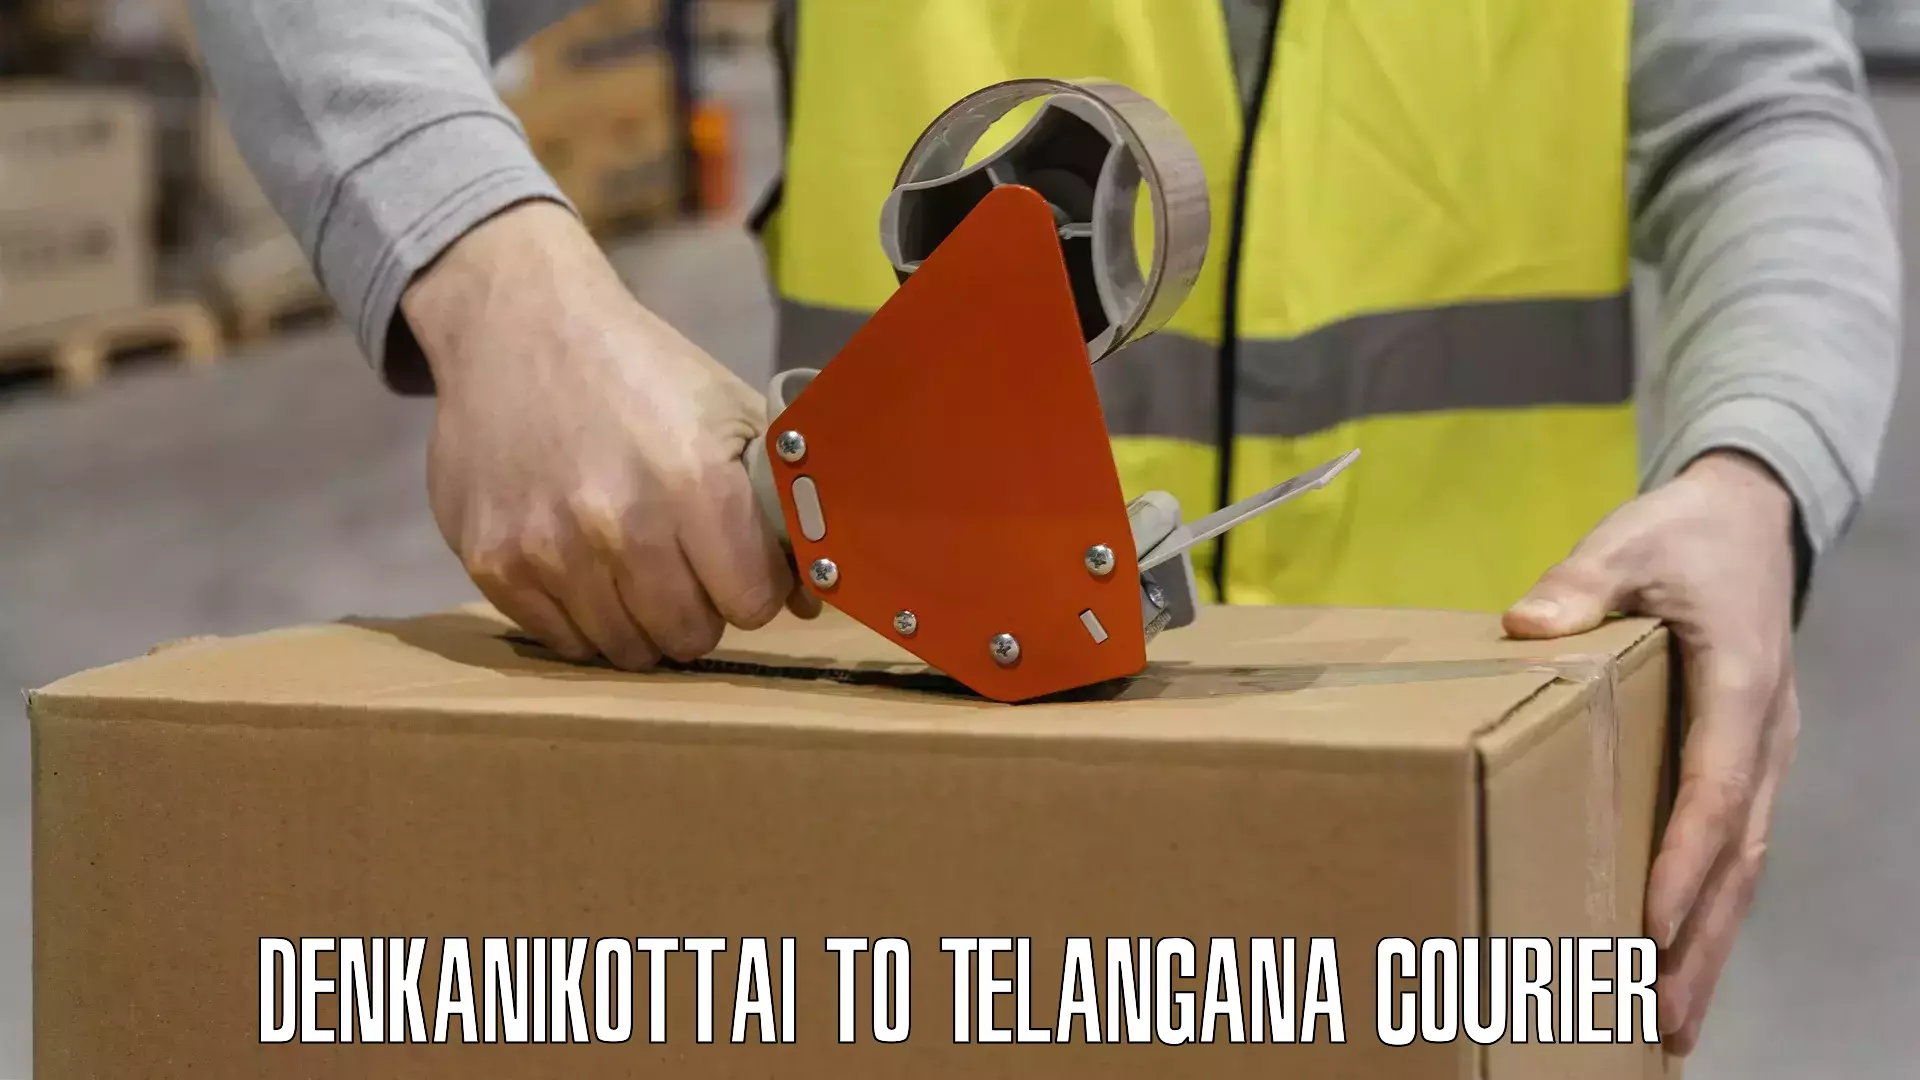 Customer-friendly courier services Denkanikottai to Telangana